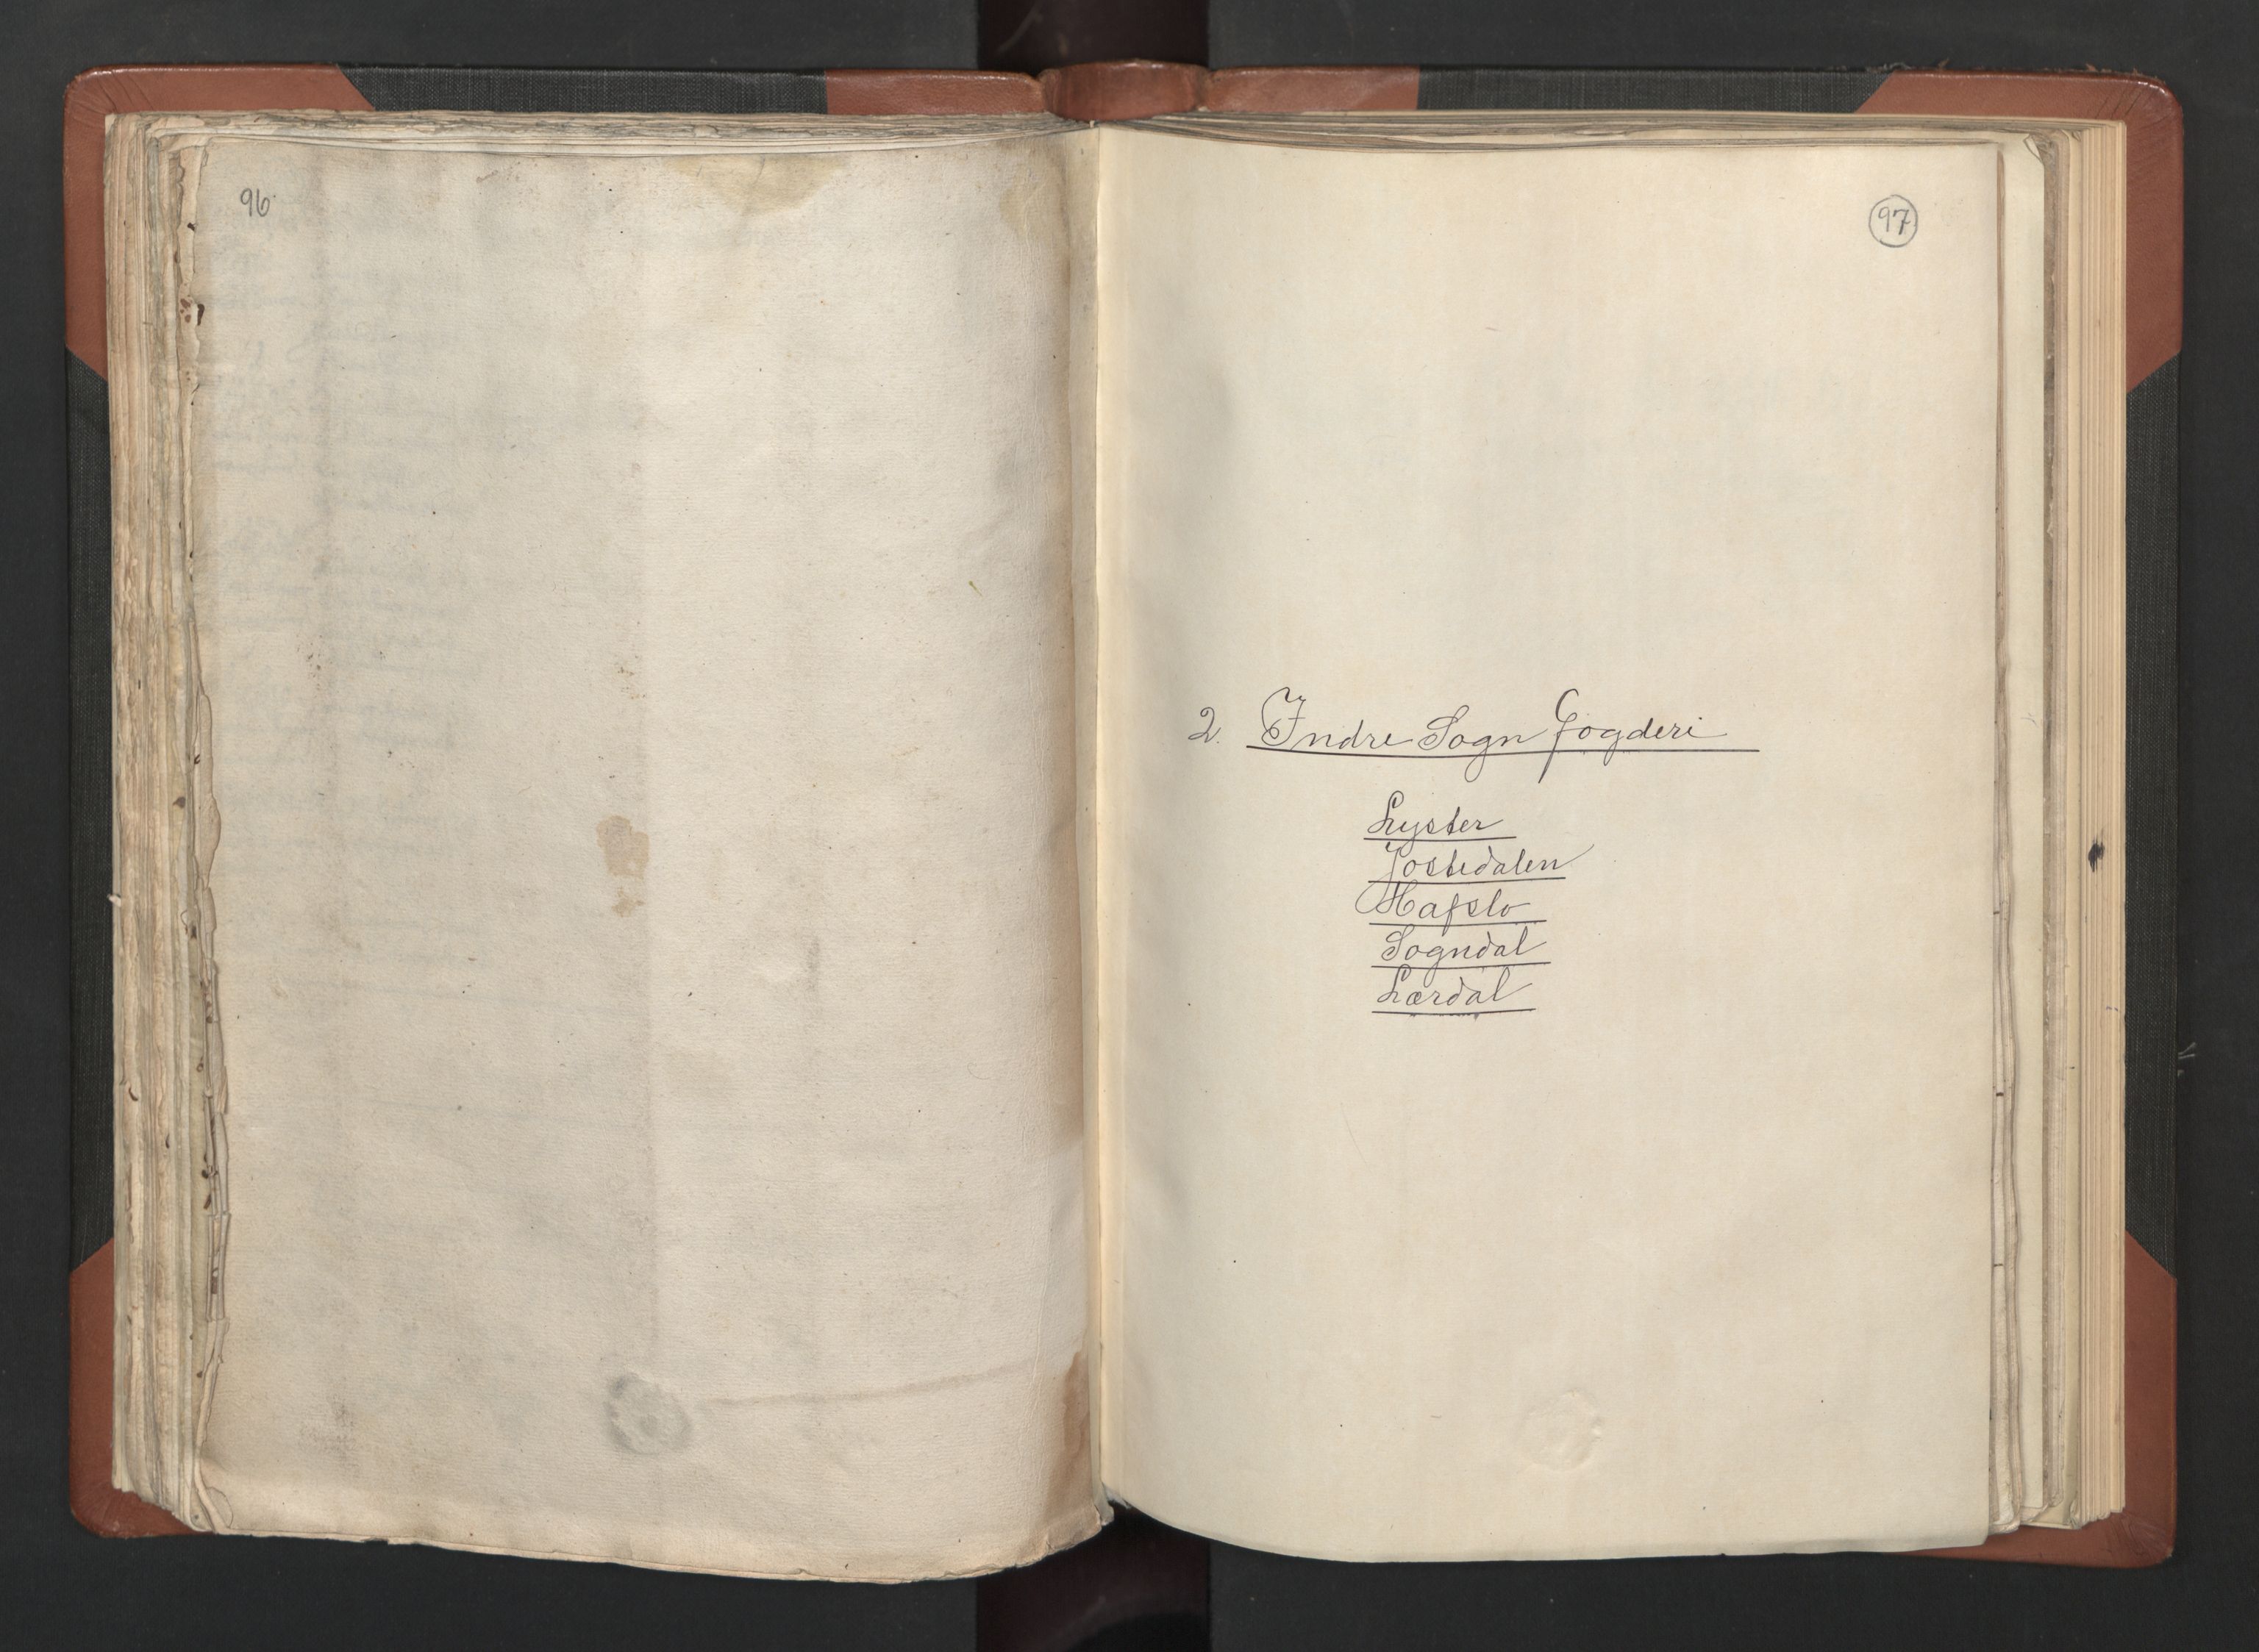 RA, Bailiff's Census 1664-1666, no. 14: Hardanger len, Ytre Sogn fogderi and Indre Sogn fogderi, 1664-1665, p. 96-97